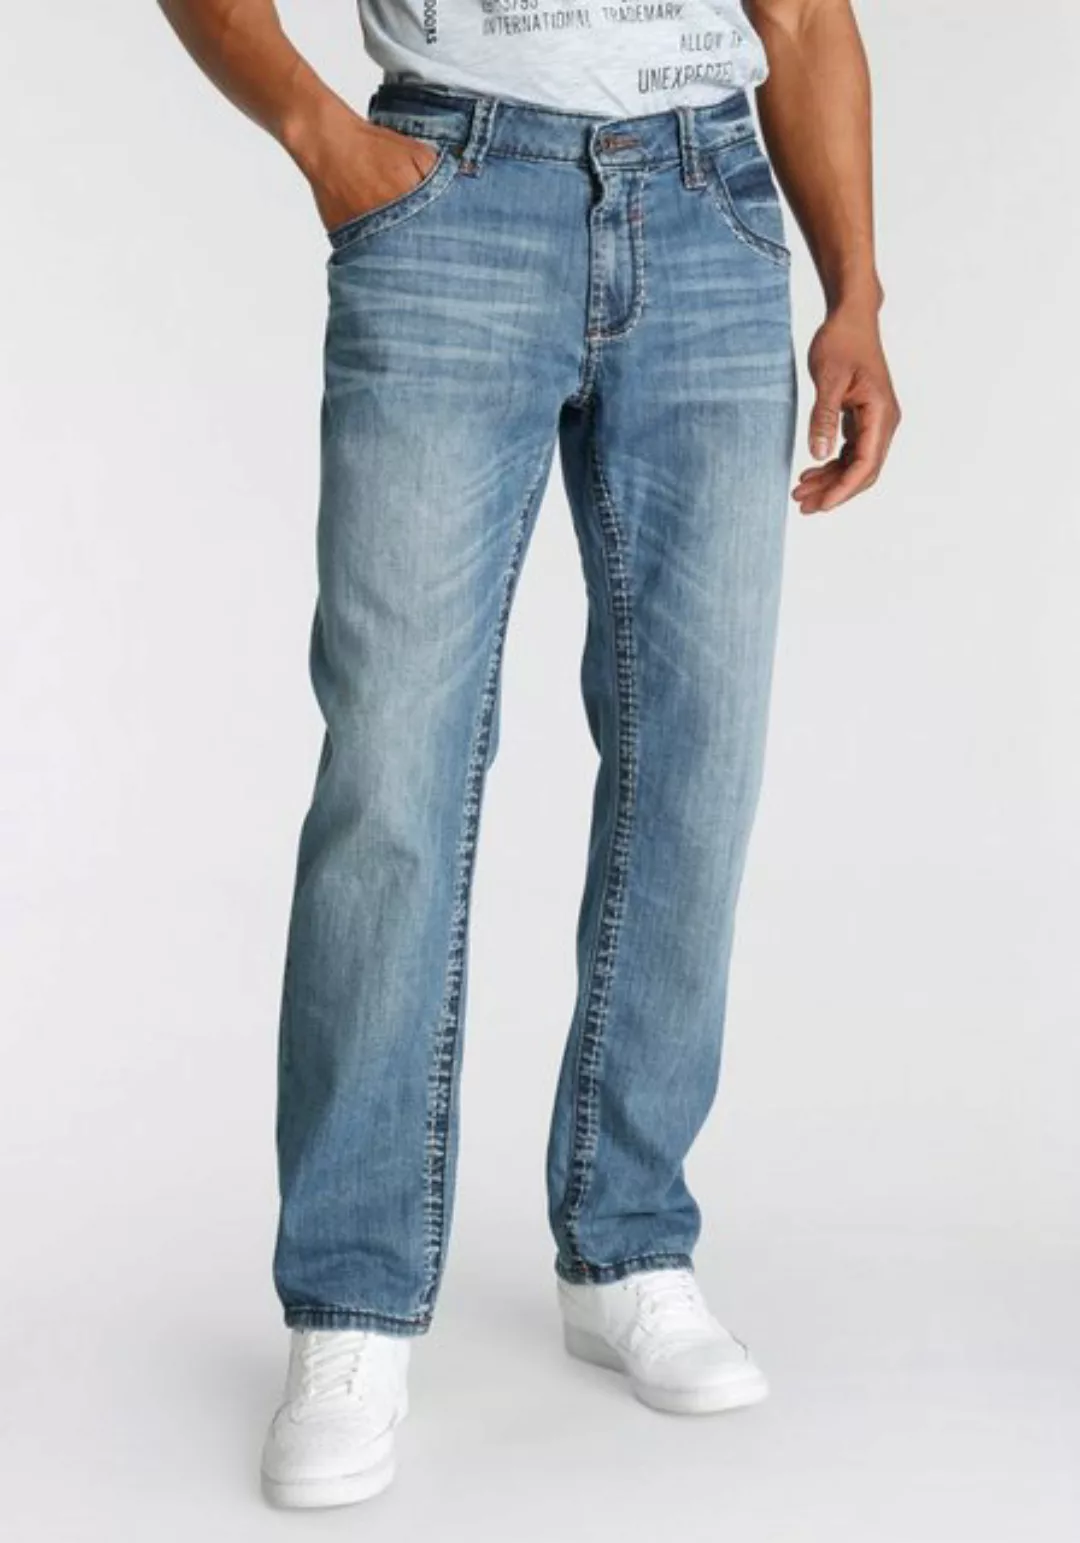 CAMP DAVID Regular-fit-Jeans NI:CO:R611 mit Abriebeffekten günstig online kaufen